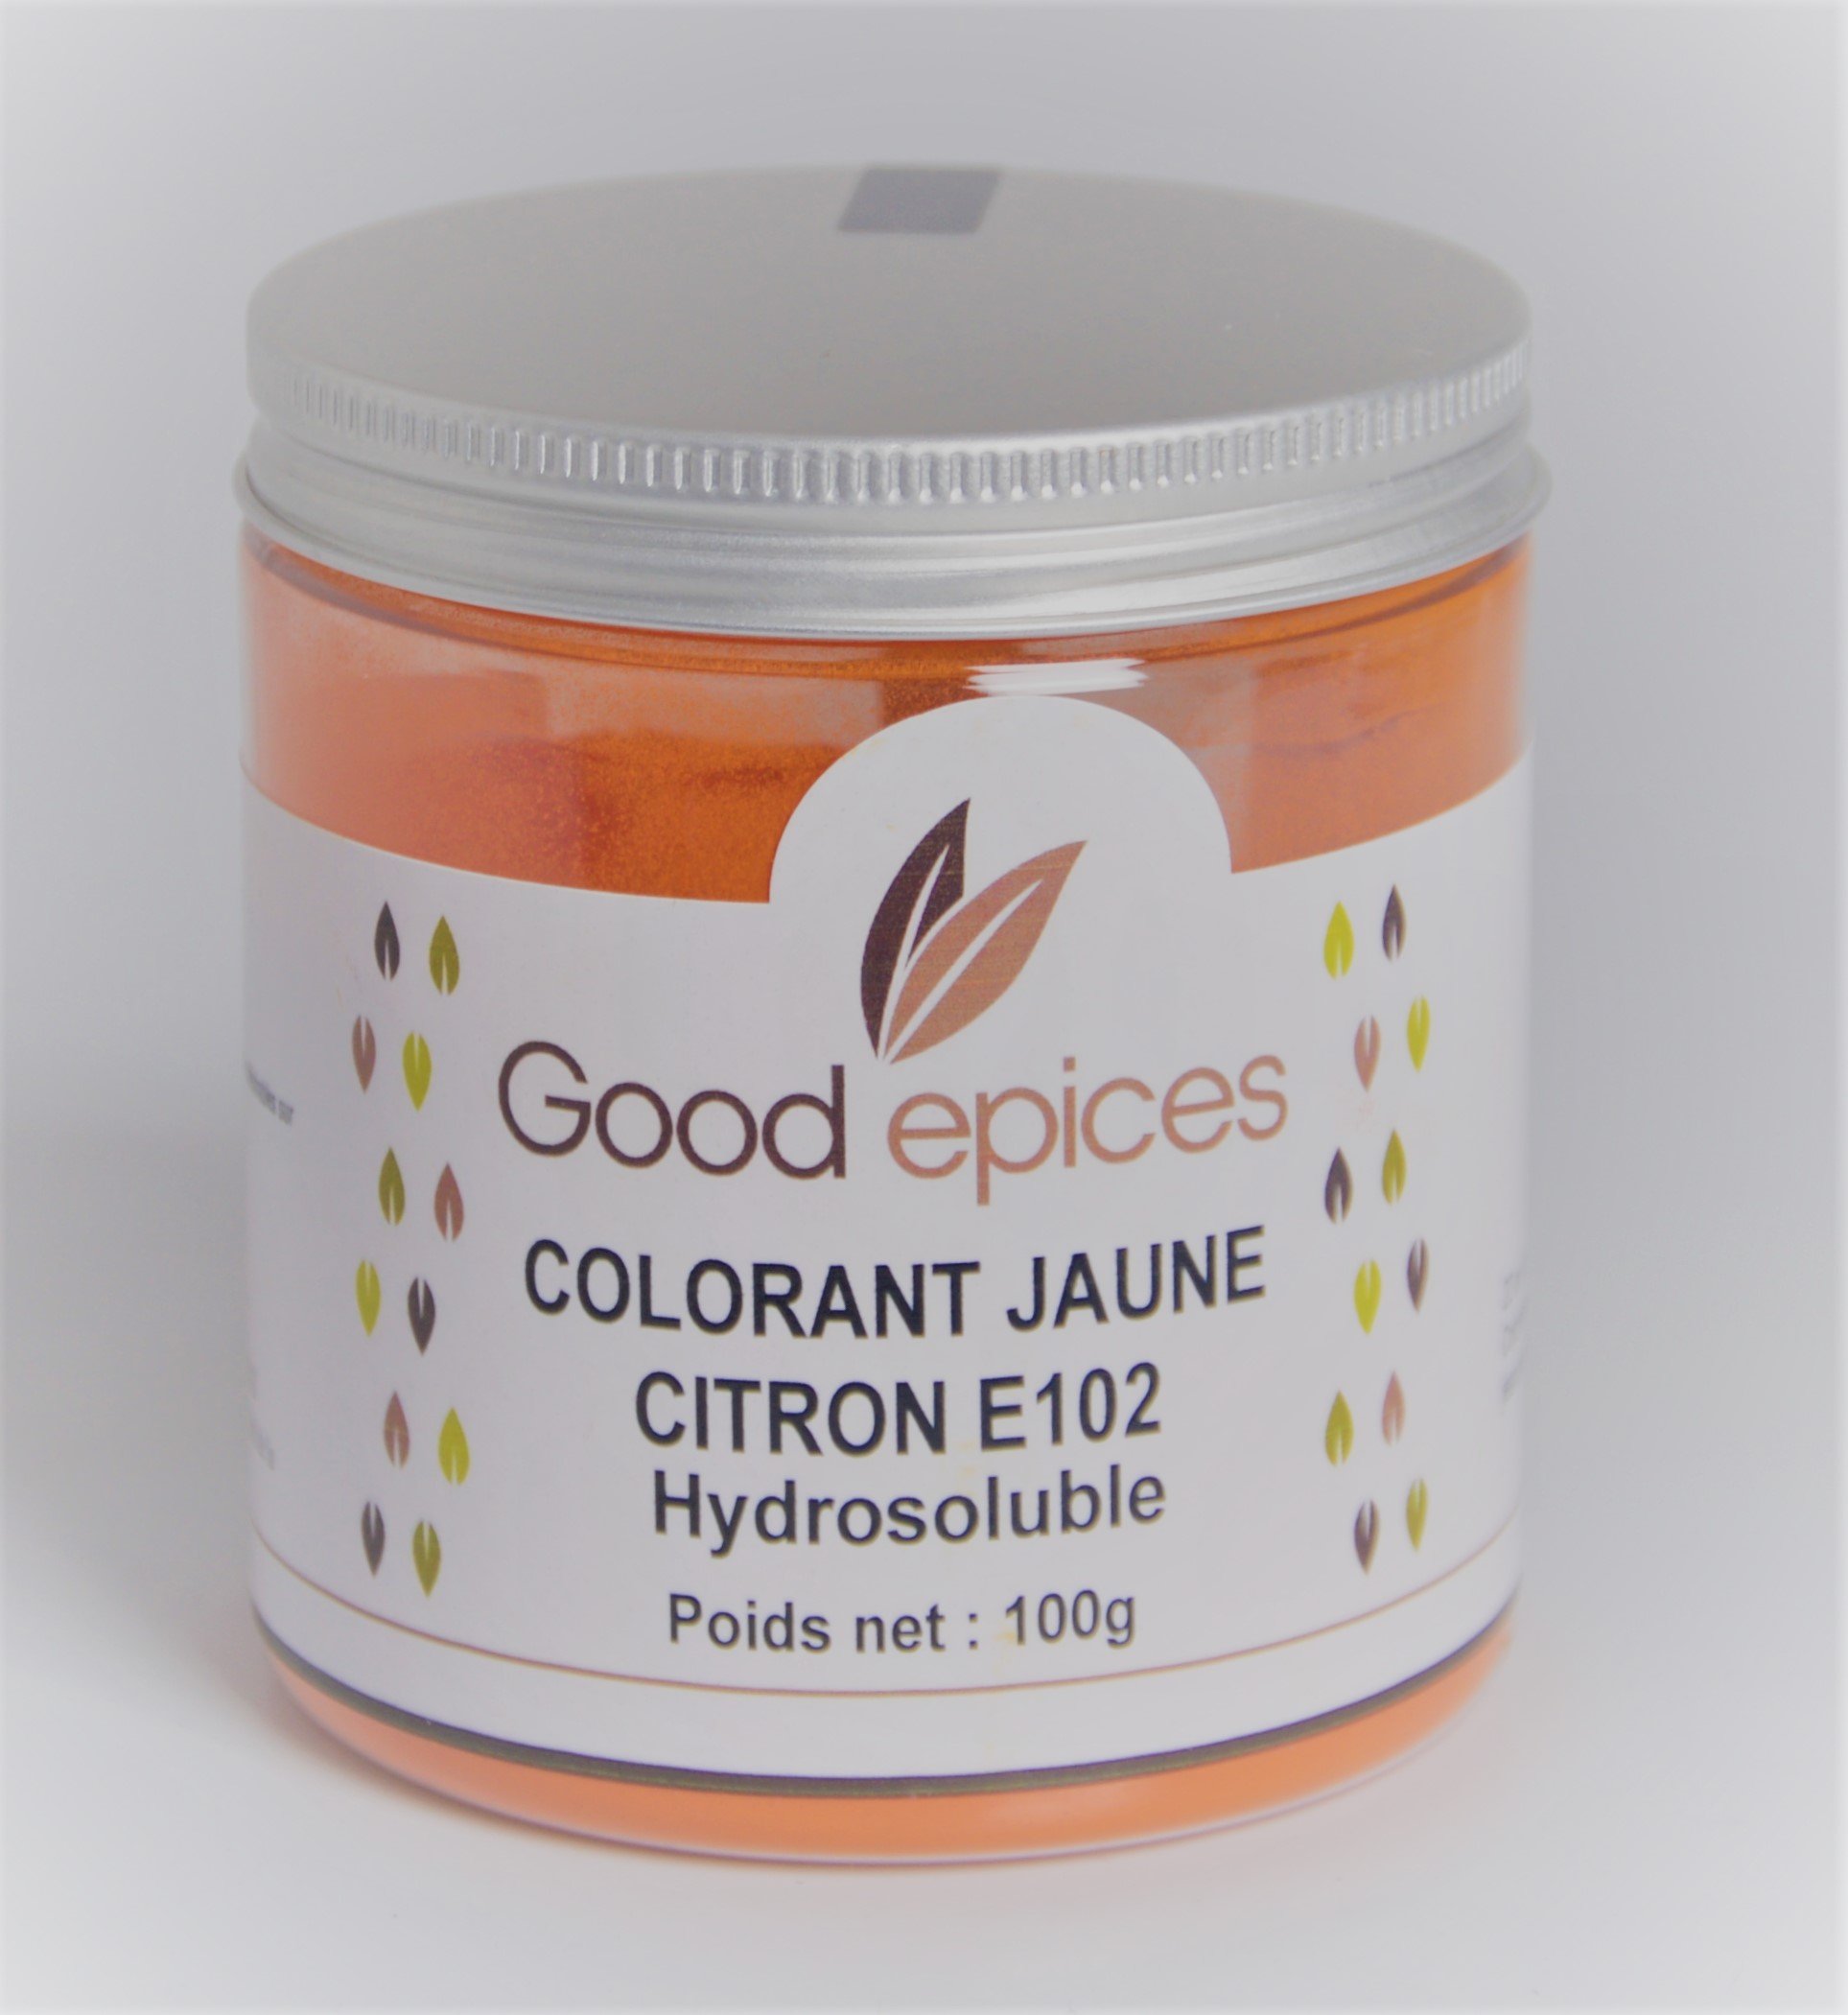 Good épices Colorant alimentaire jaune d'or E102 hydrosoluble 100gr (Préco)